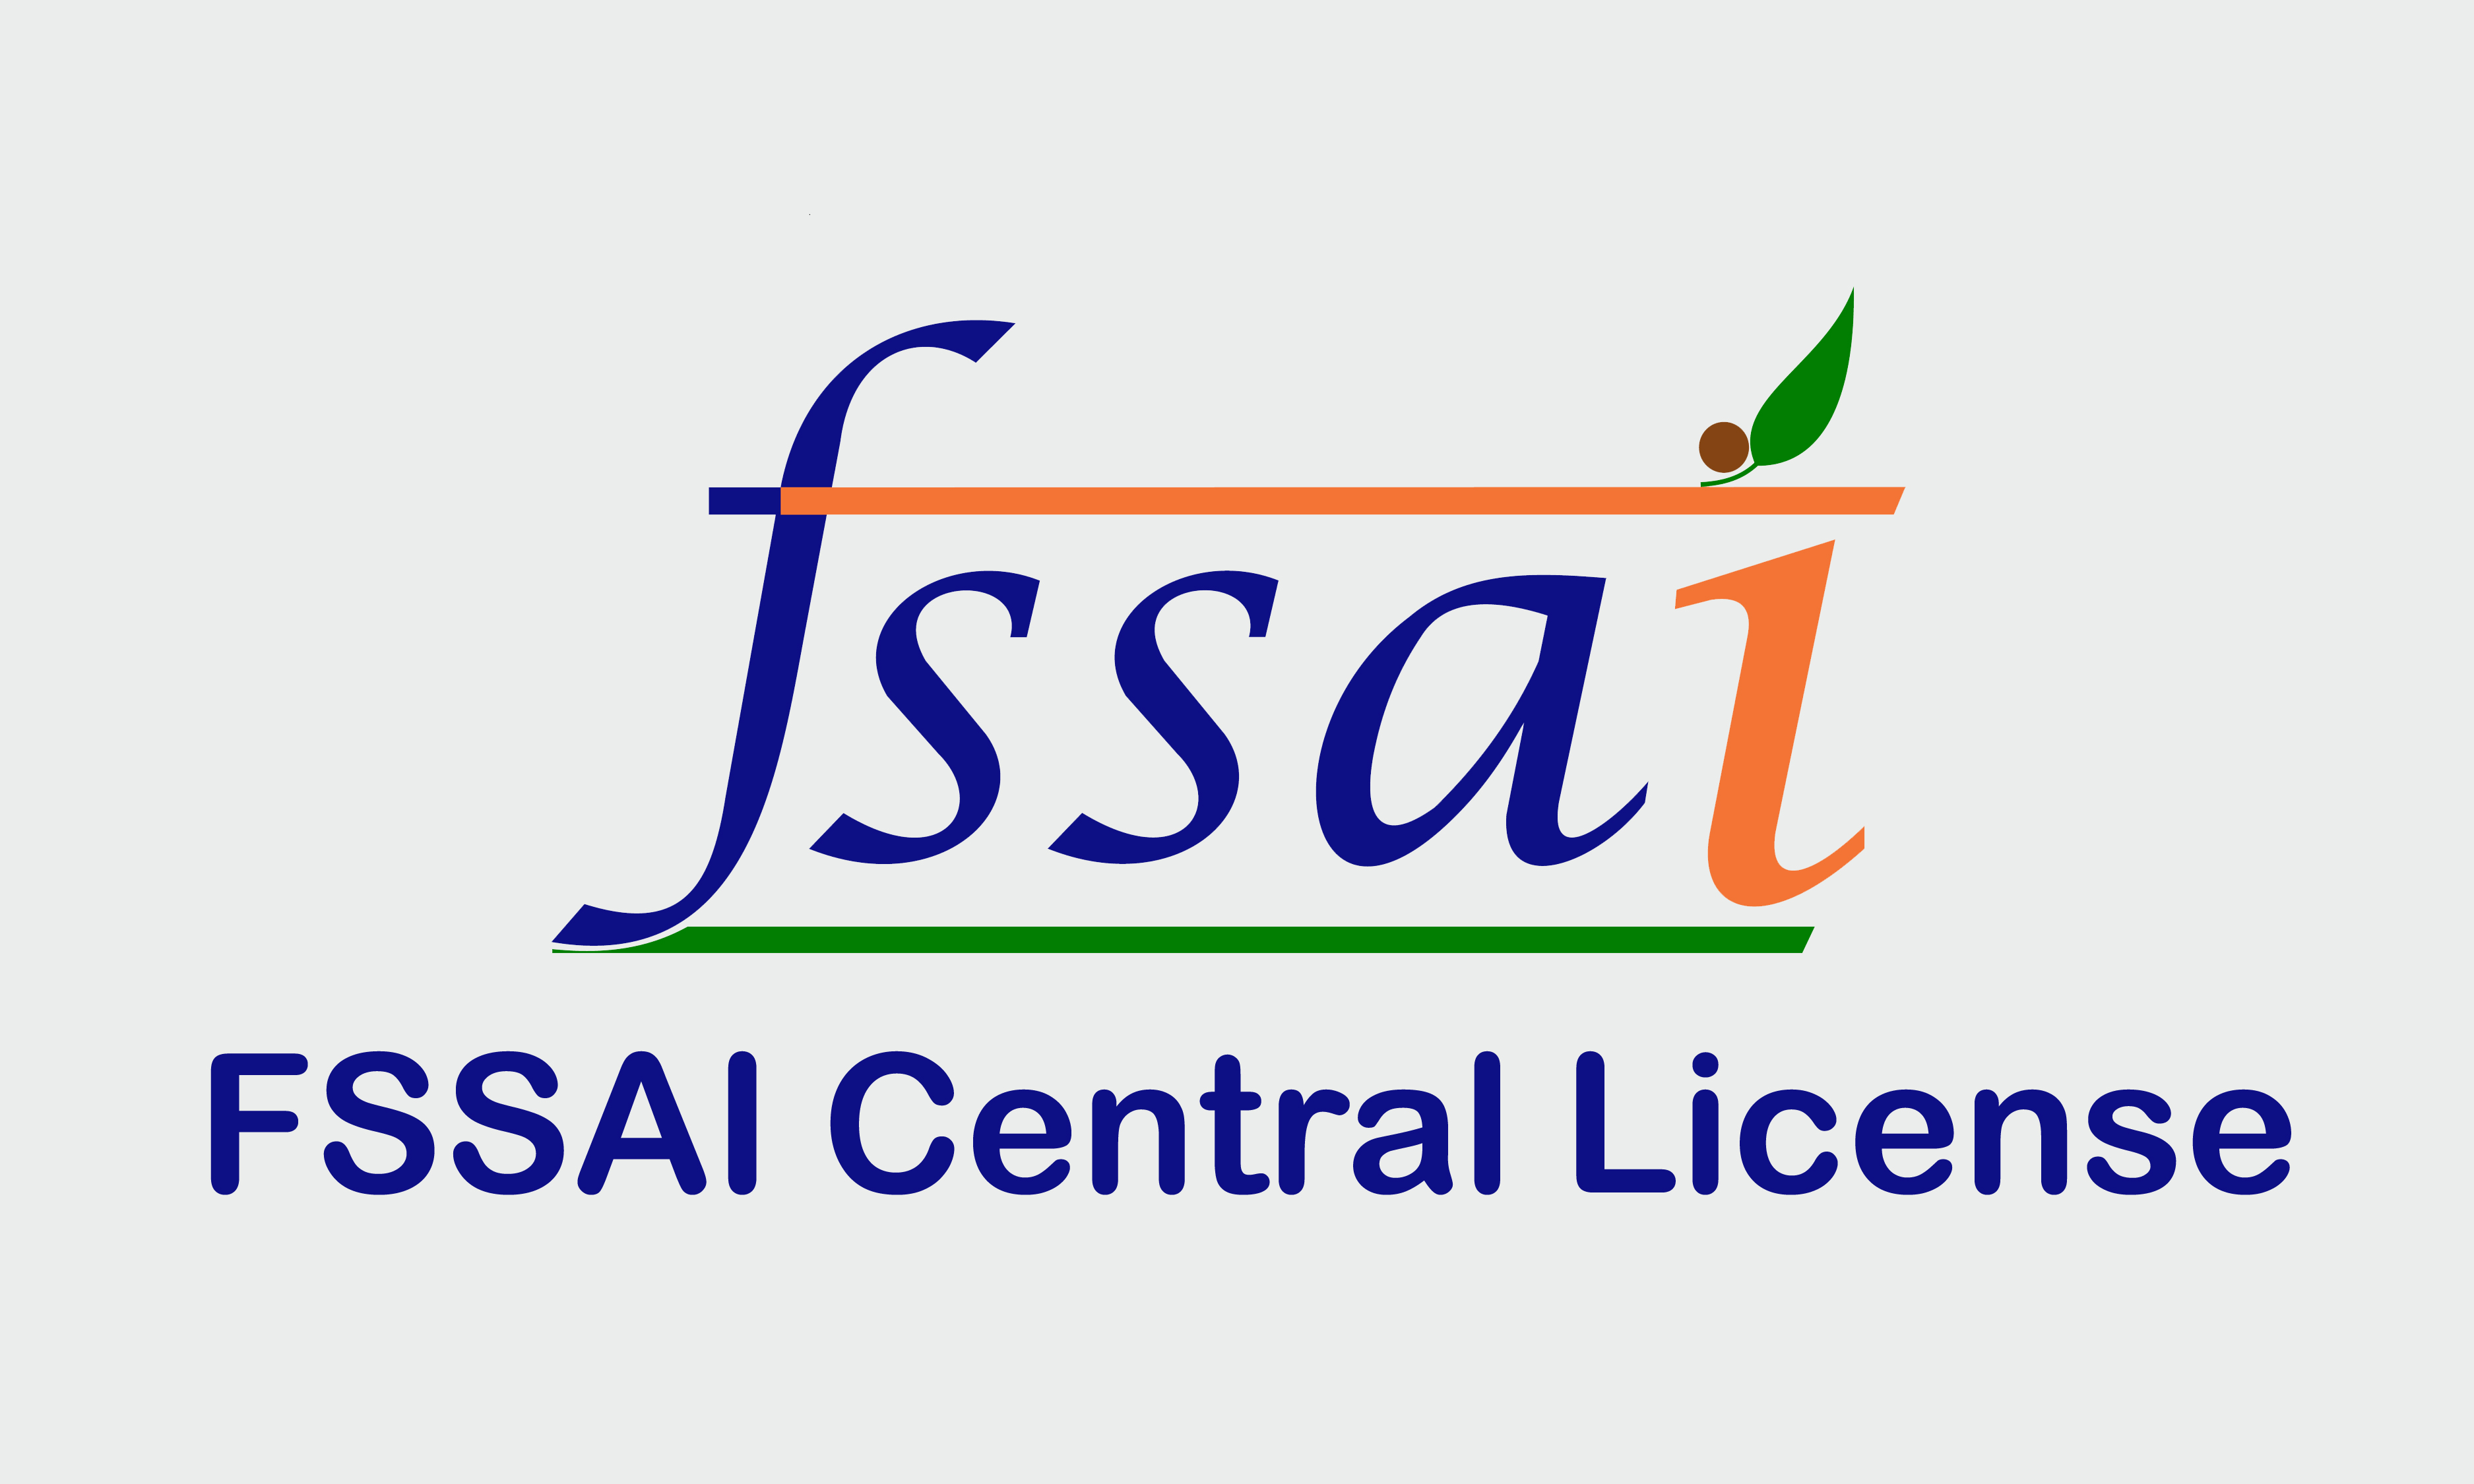 fssai-central-license